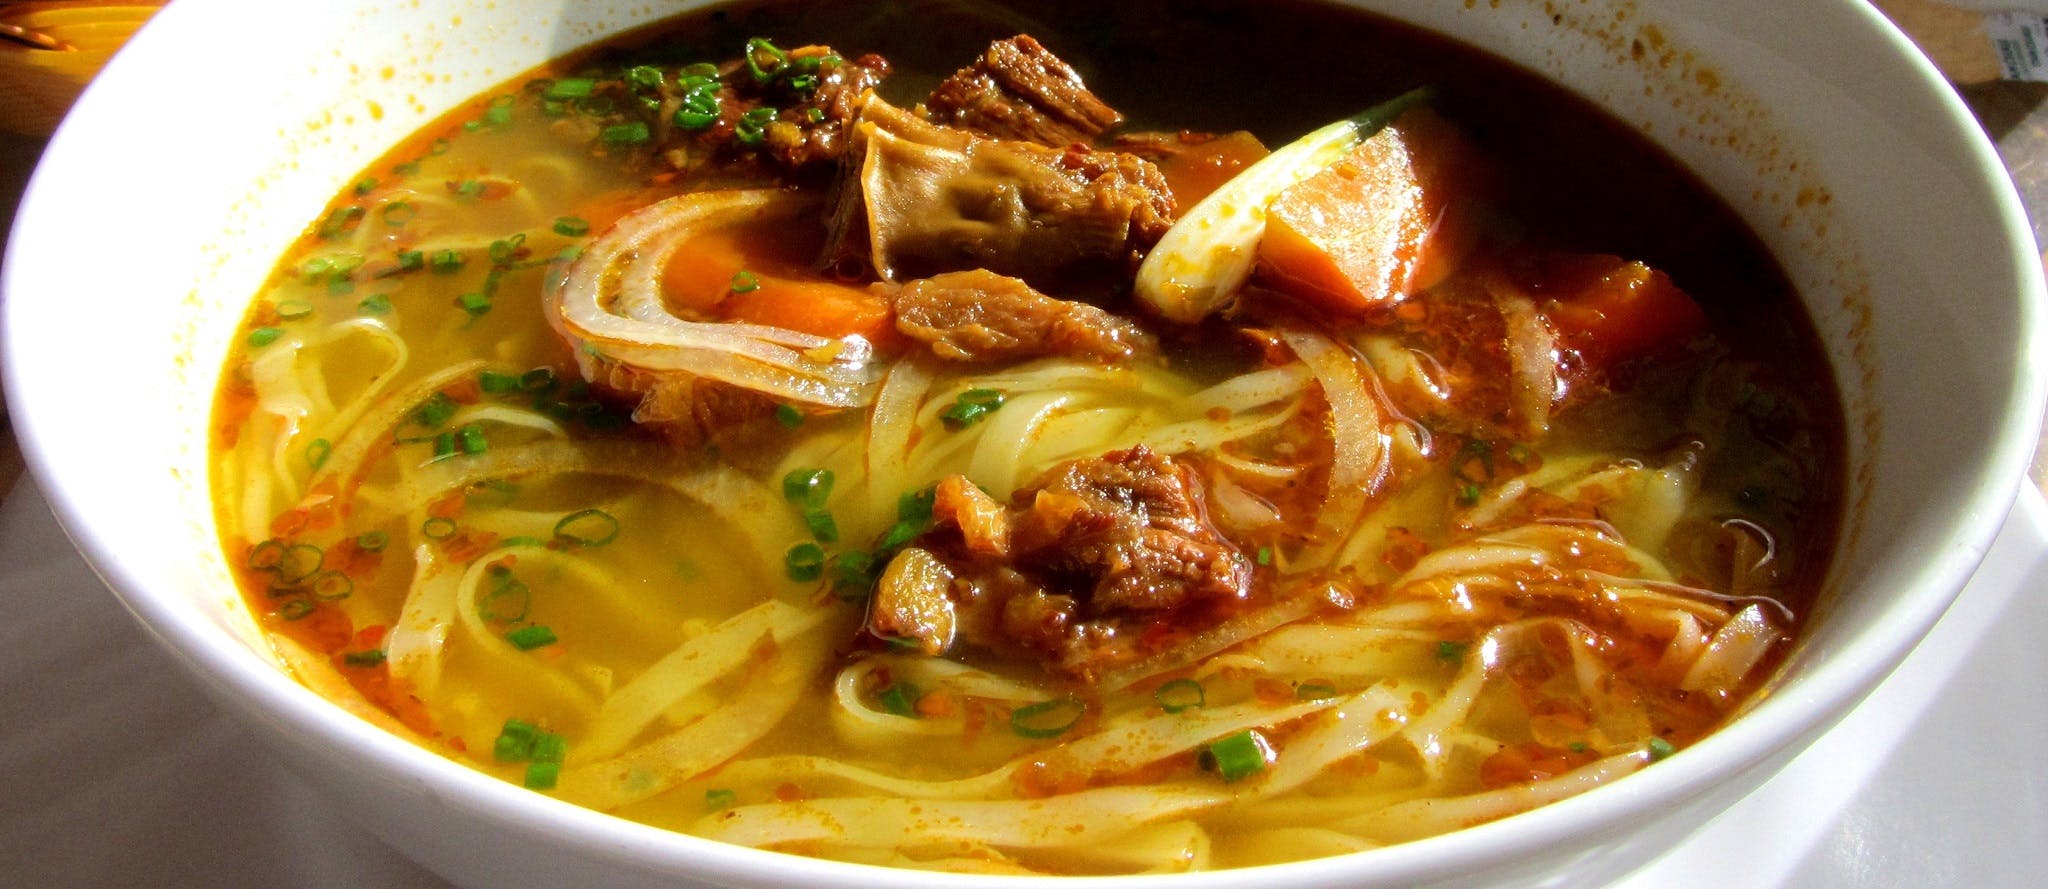 Bò Kho: Vietnamese Beef Stew